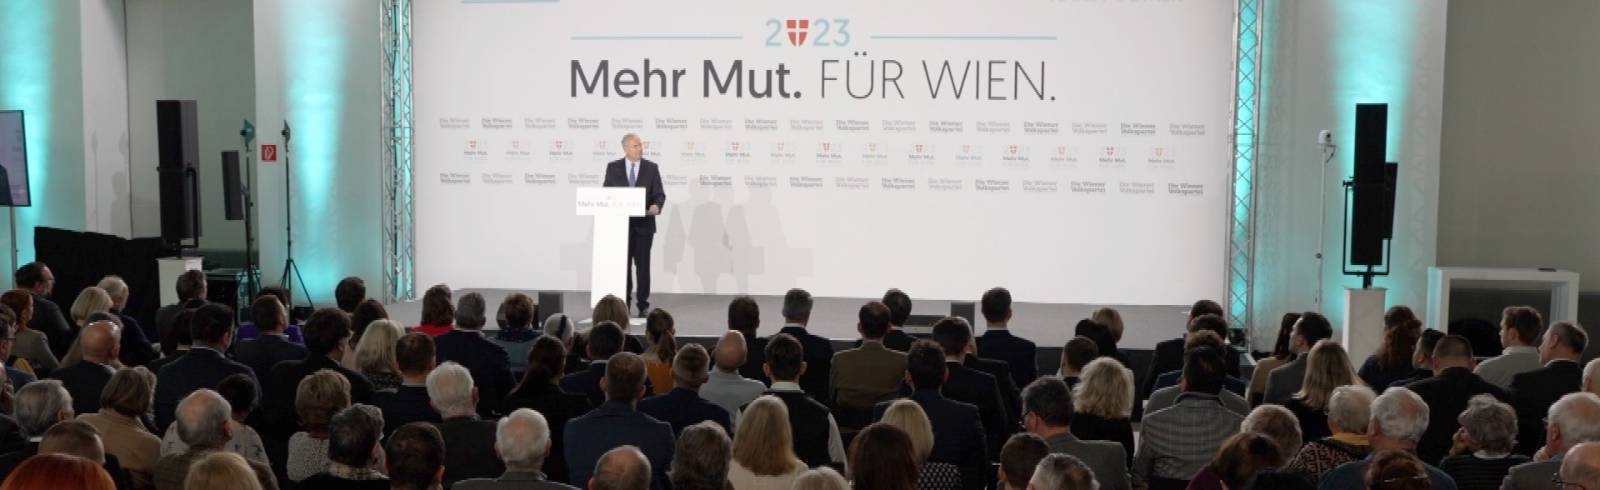 Jahresauftakt der ÖVP Wien